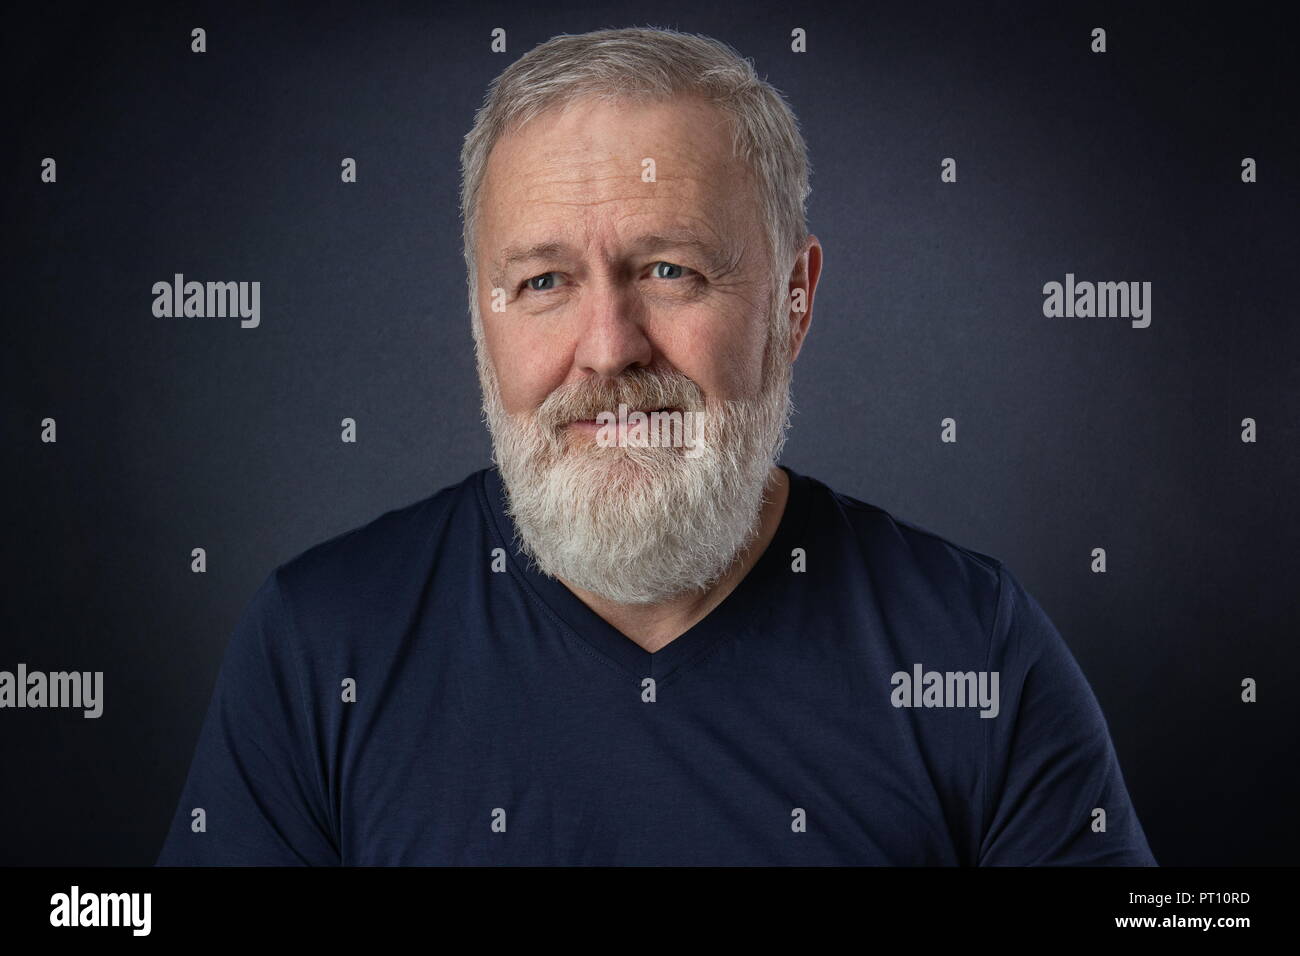 Heureux homme de 60 ans avec barbe grise posant dans le studio Banque D'Images